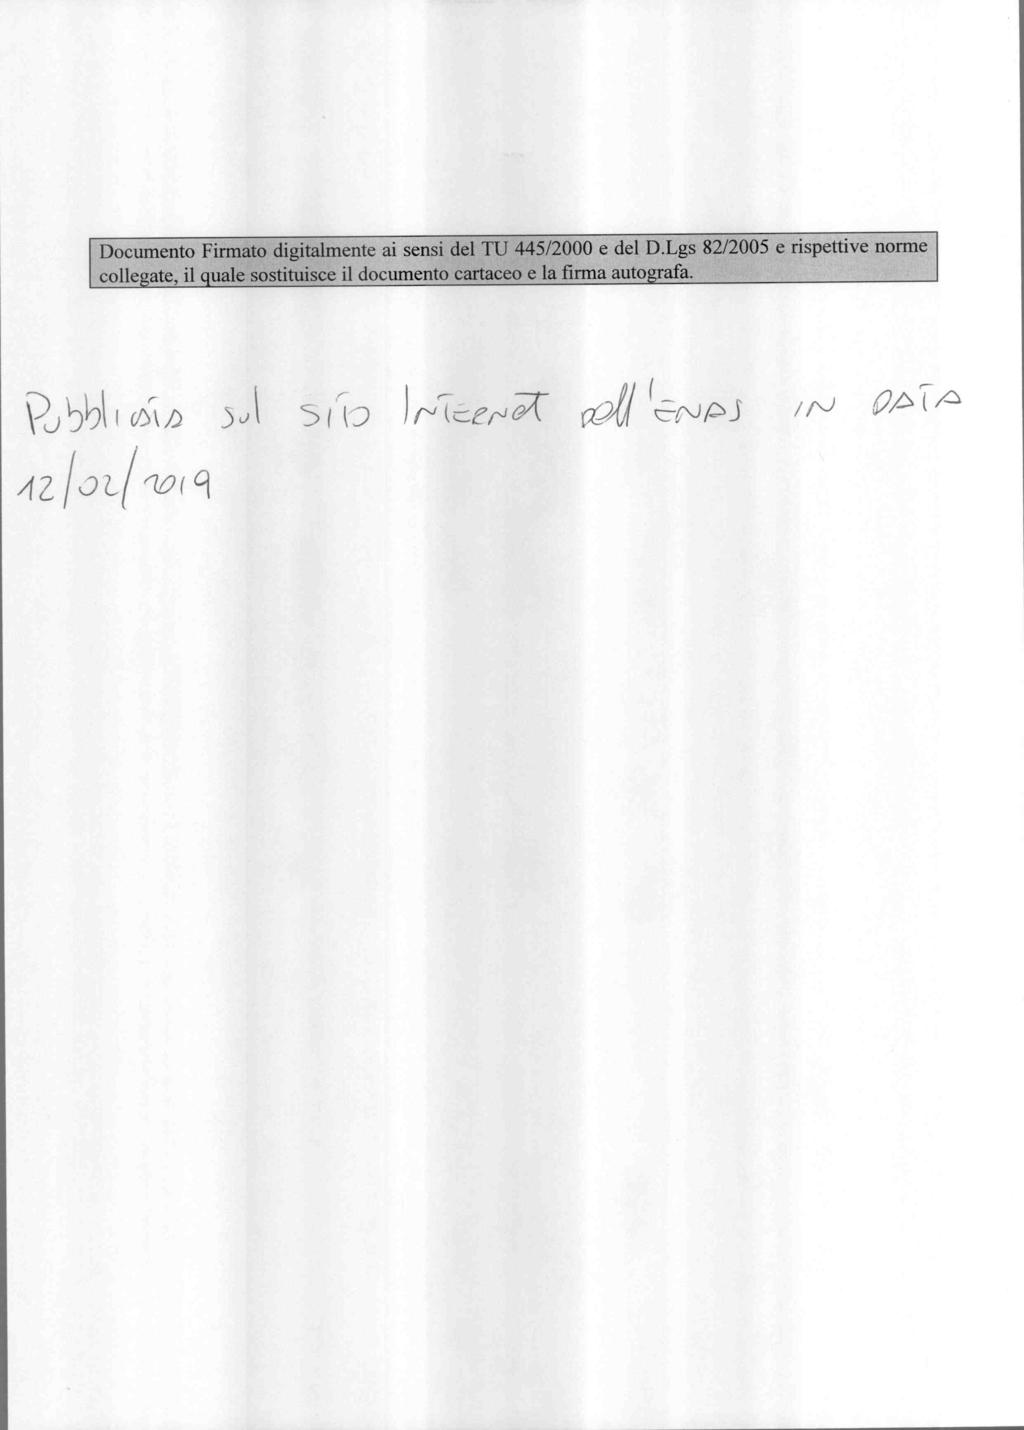 Documento Firmato digitalmente ai sensi del TU 445/2000 e del D.